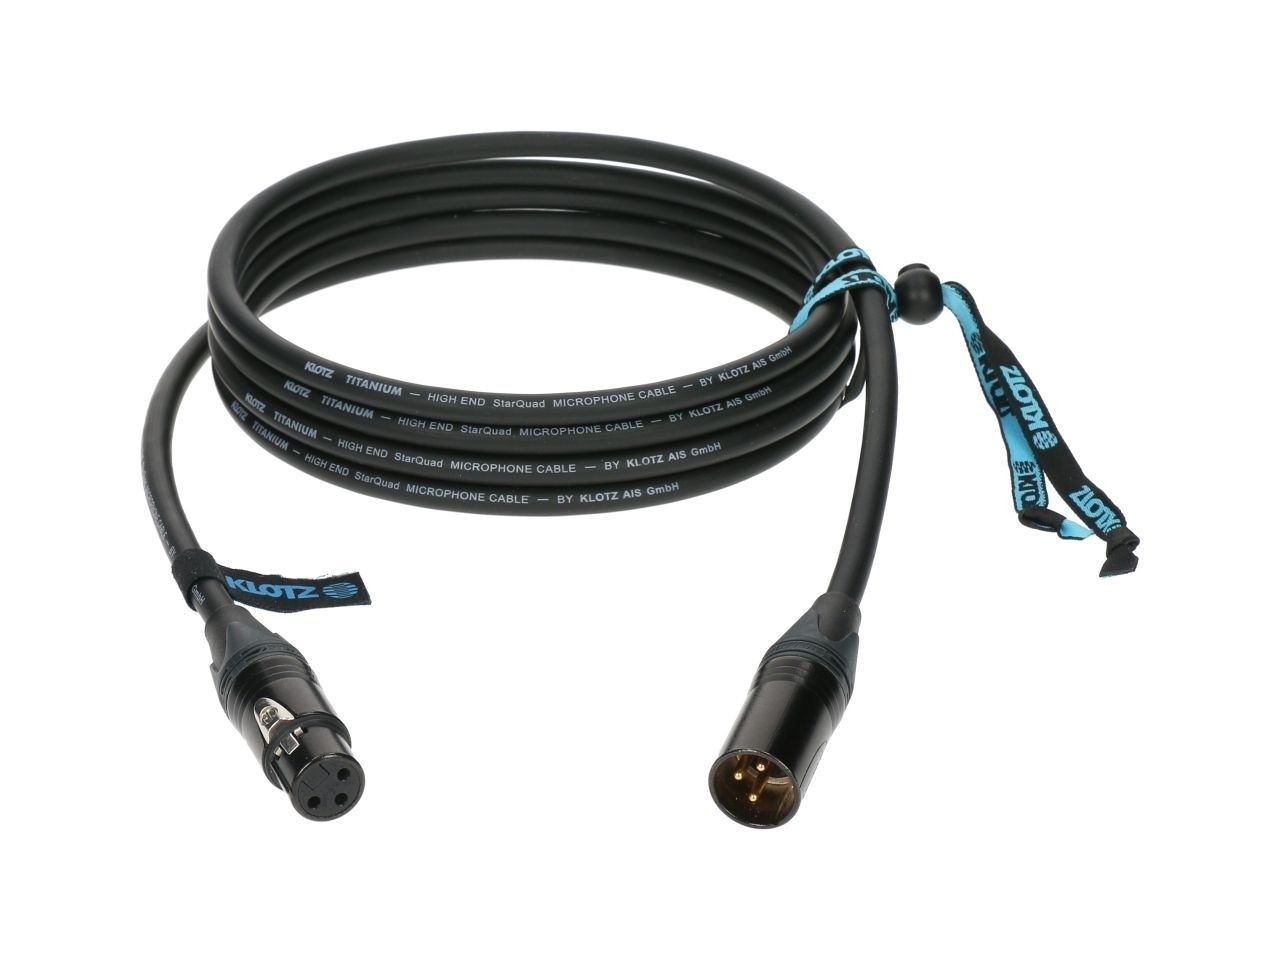 Klotz TI-M0100 TITANIUM supreme StarQuad mic cable 1m